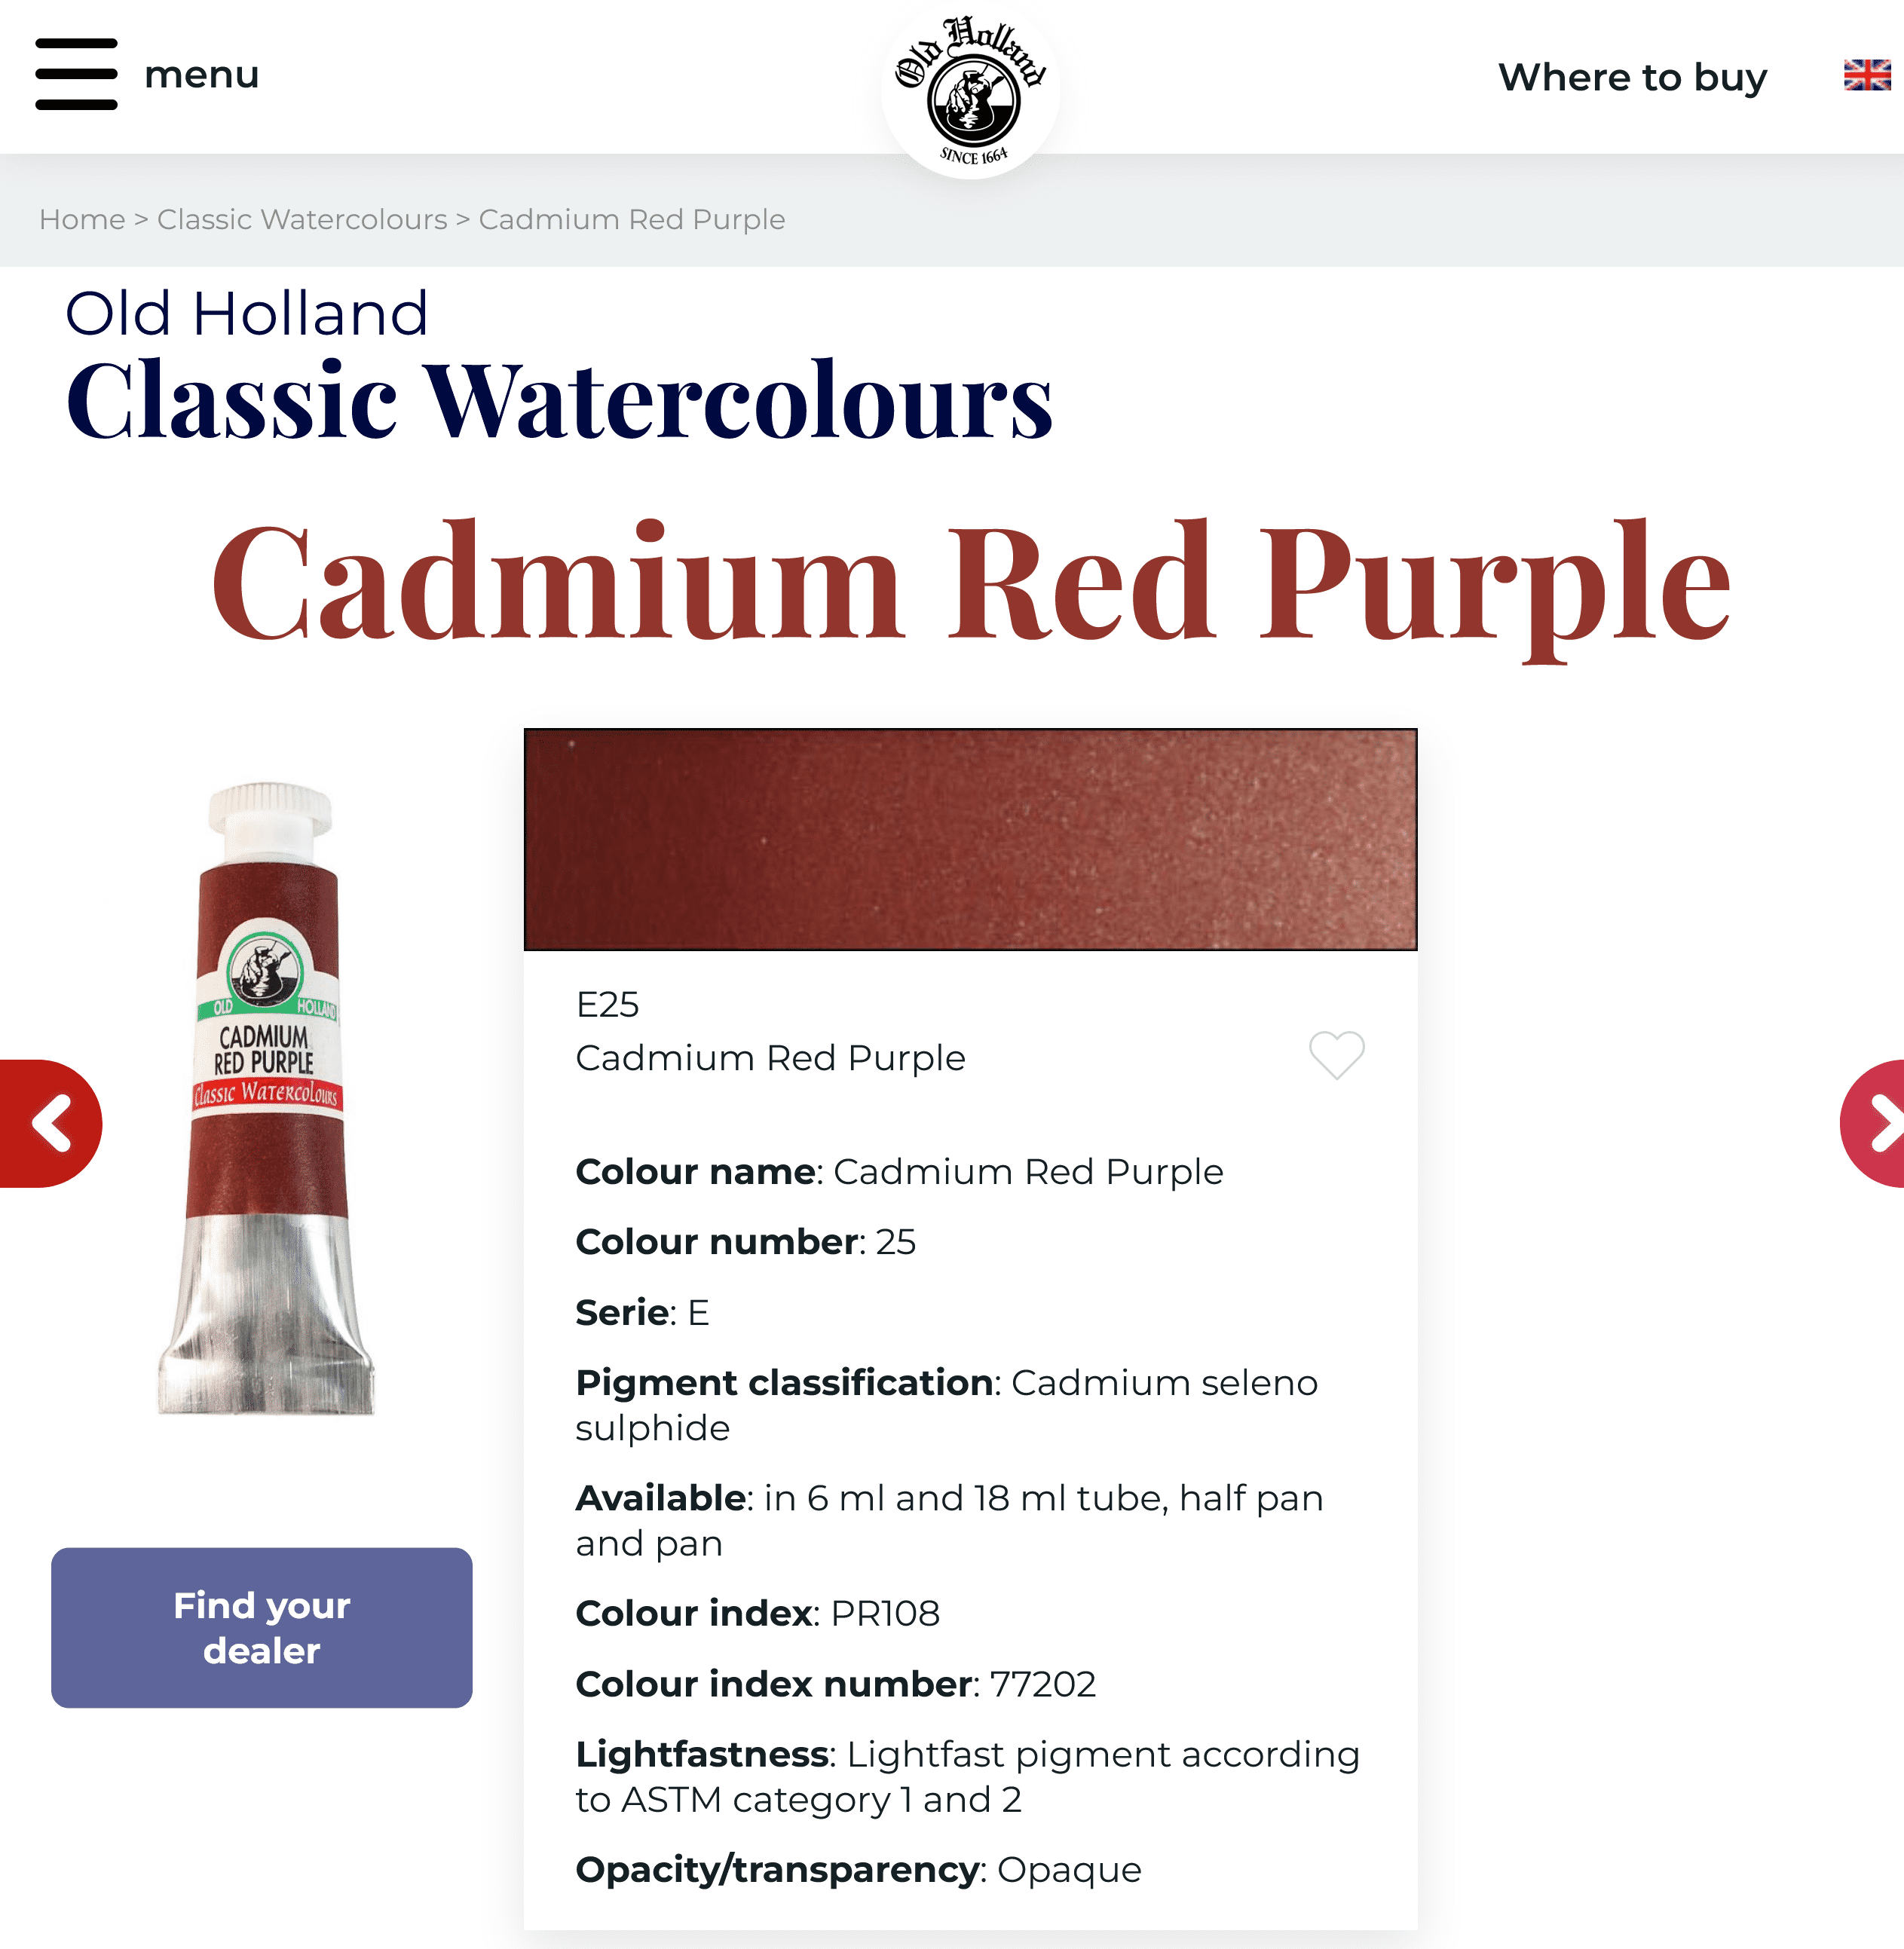 Cadmium red purple.